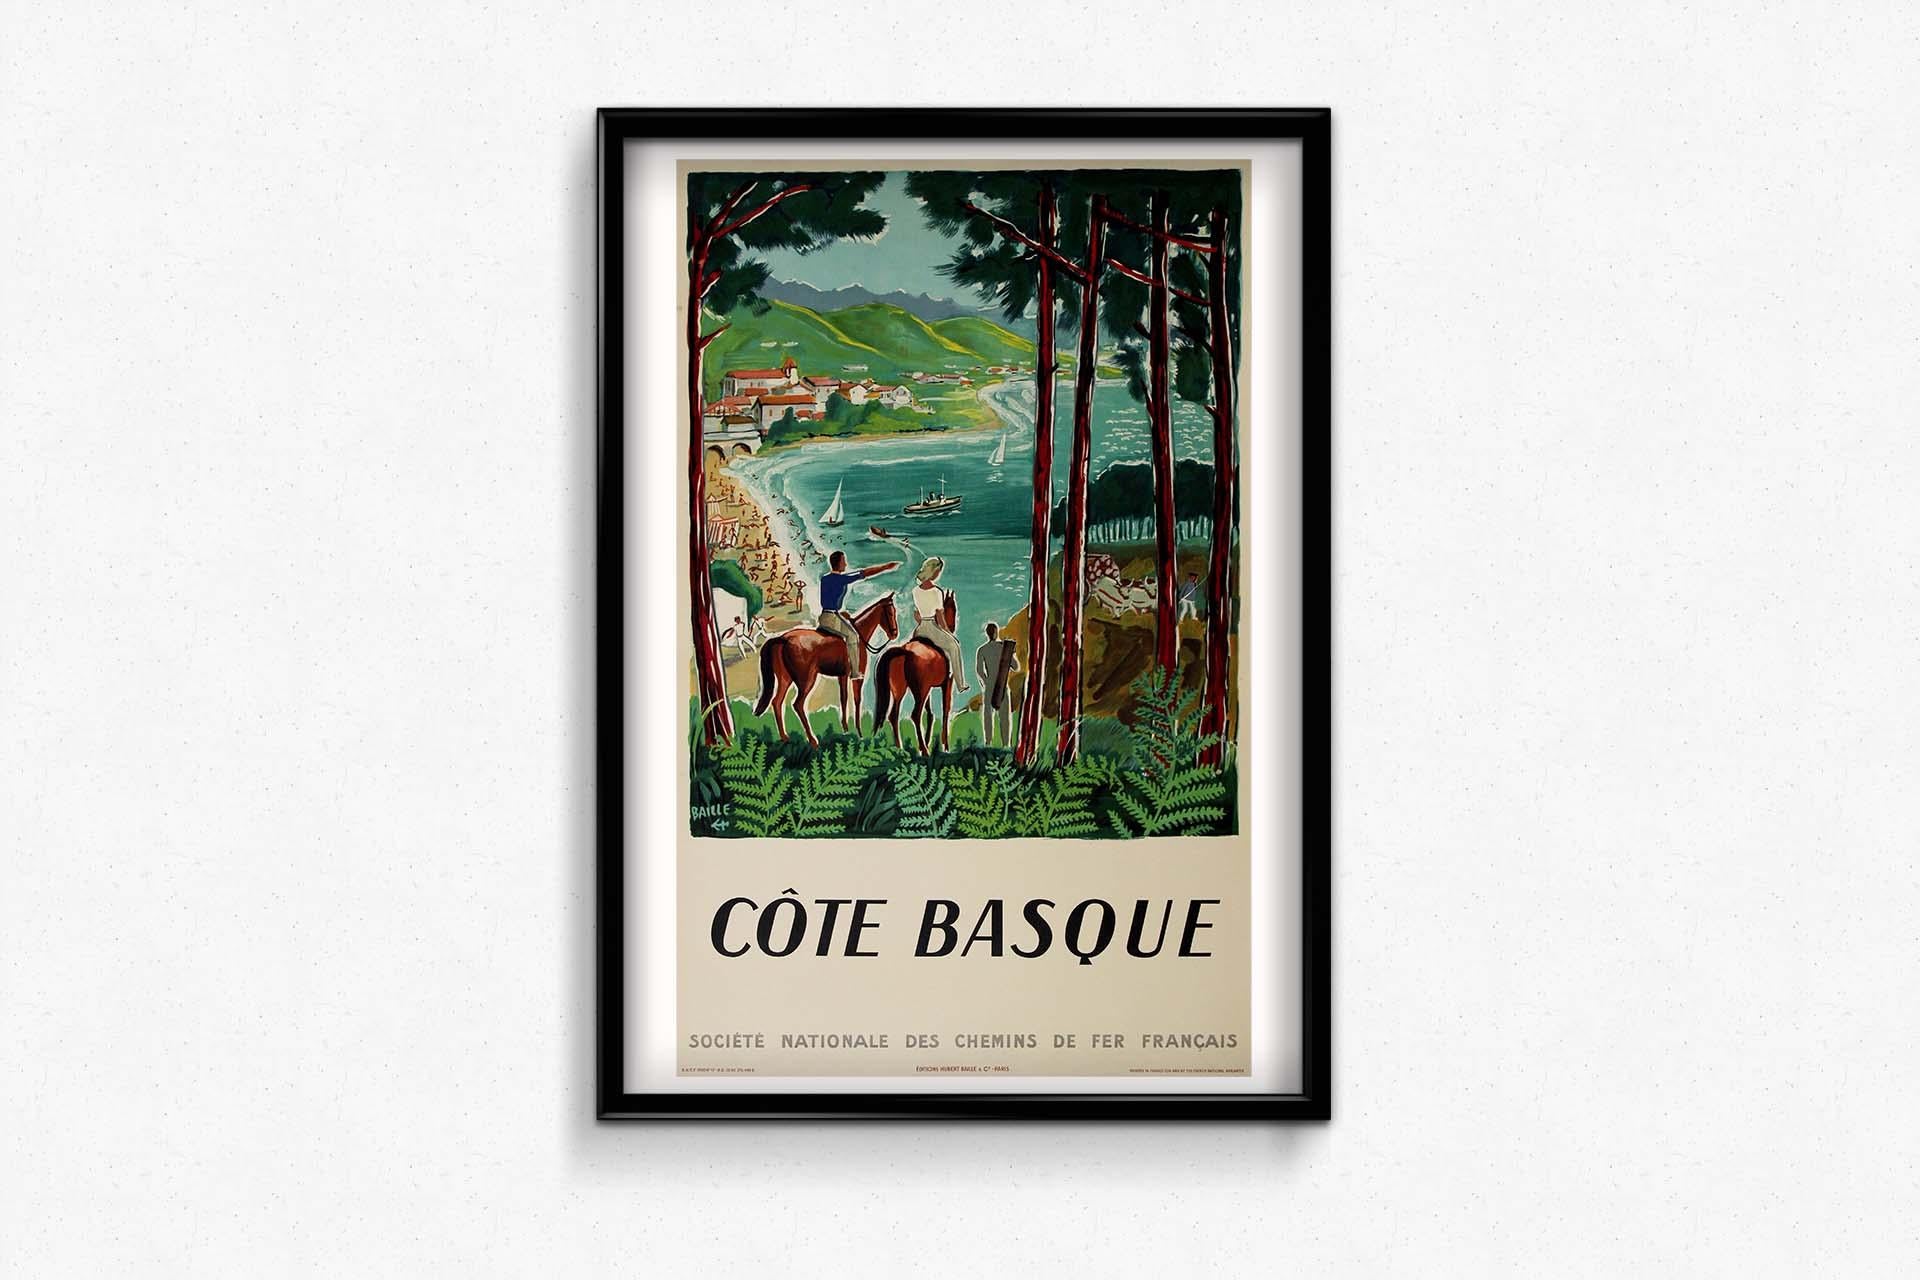 Hervé Baille, ein renommierter Künstler, der für seine fesselnden Reiseplakate bekannt ist, schuf 1950 ein Meisterwerk mit seiner originellen Kreation für die SNCF Côte basque. Der am 21. Januar 1896 in Sète geborene Baille zeichnete sich auf seinem